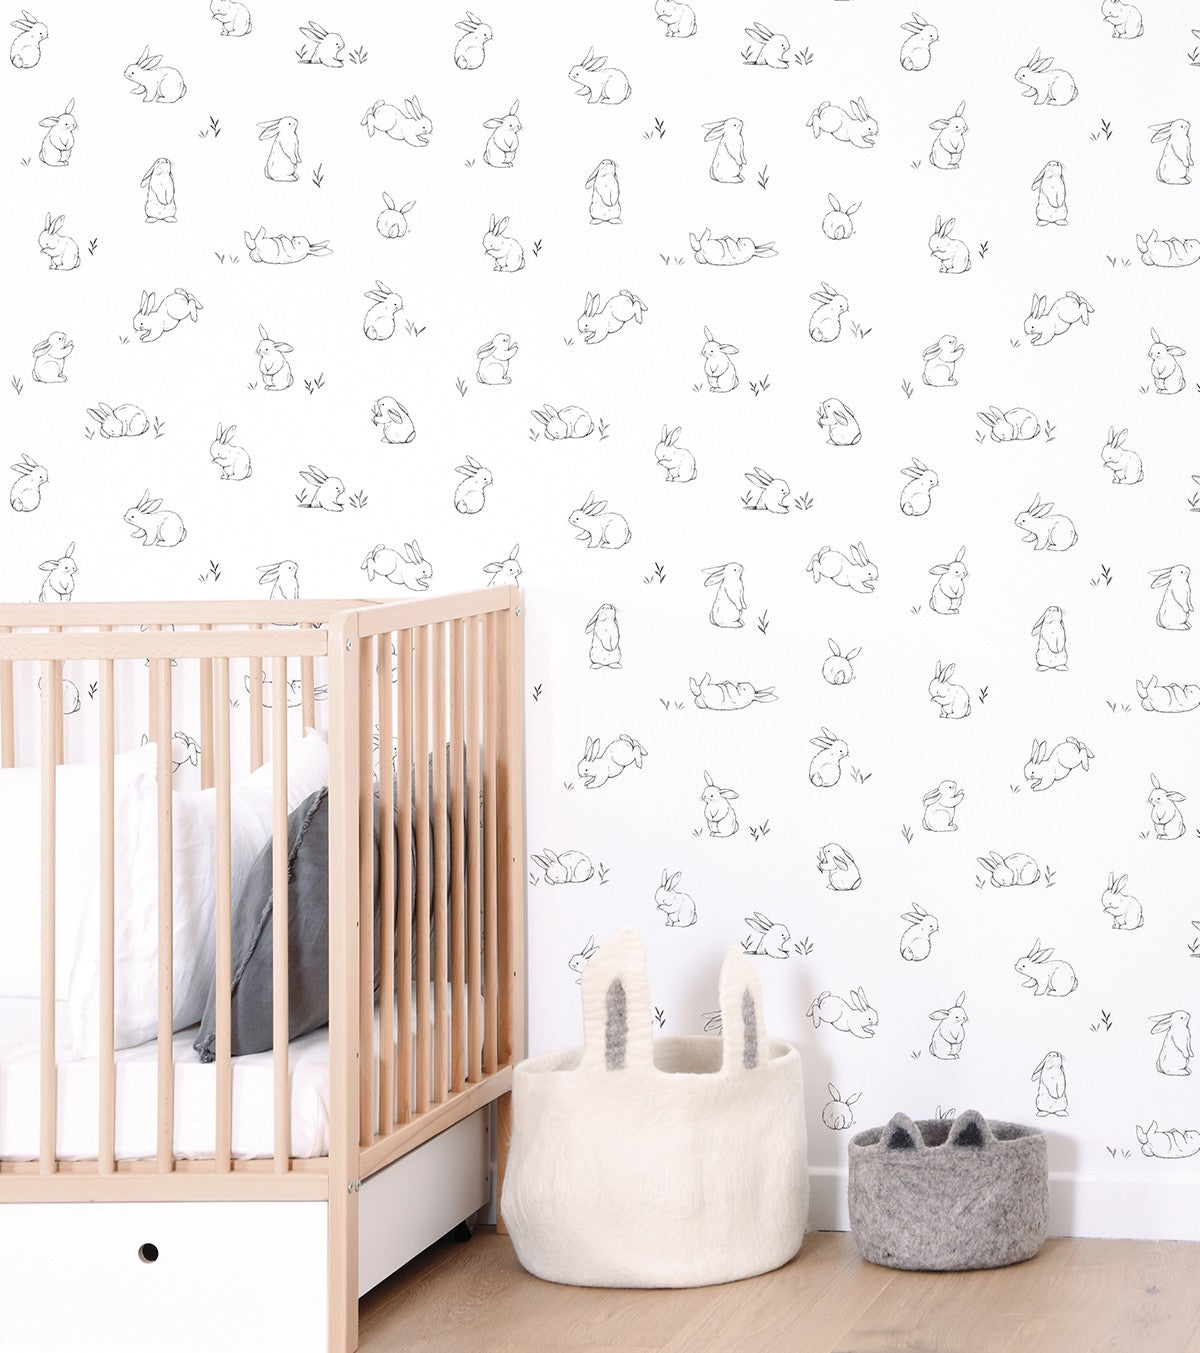 BUNNY - Children's wallpaper - Bunny motif